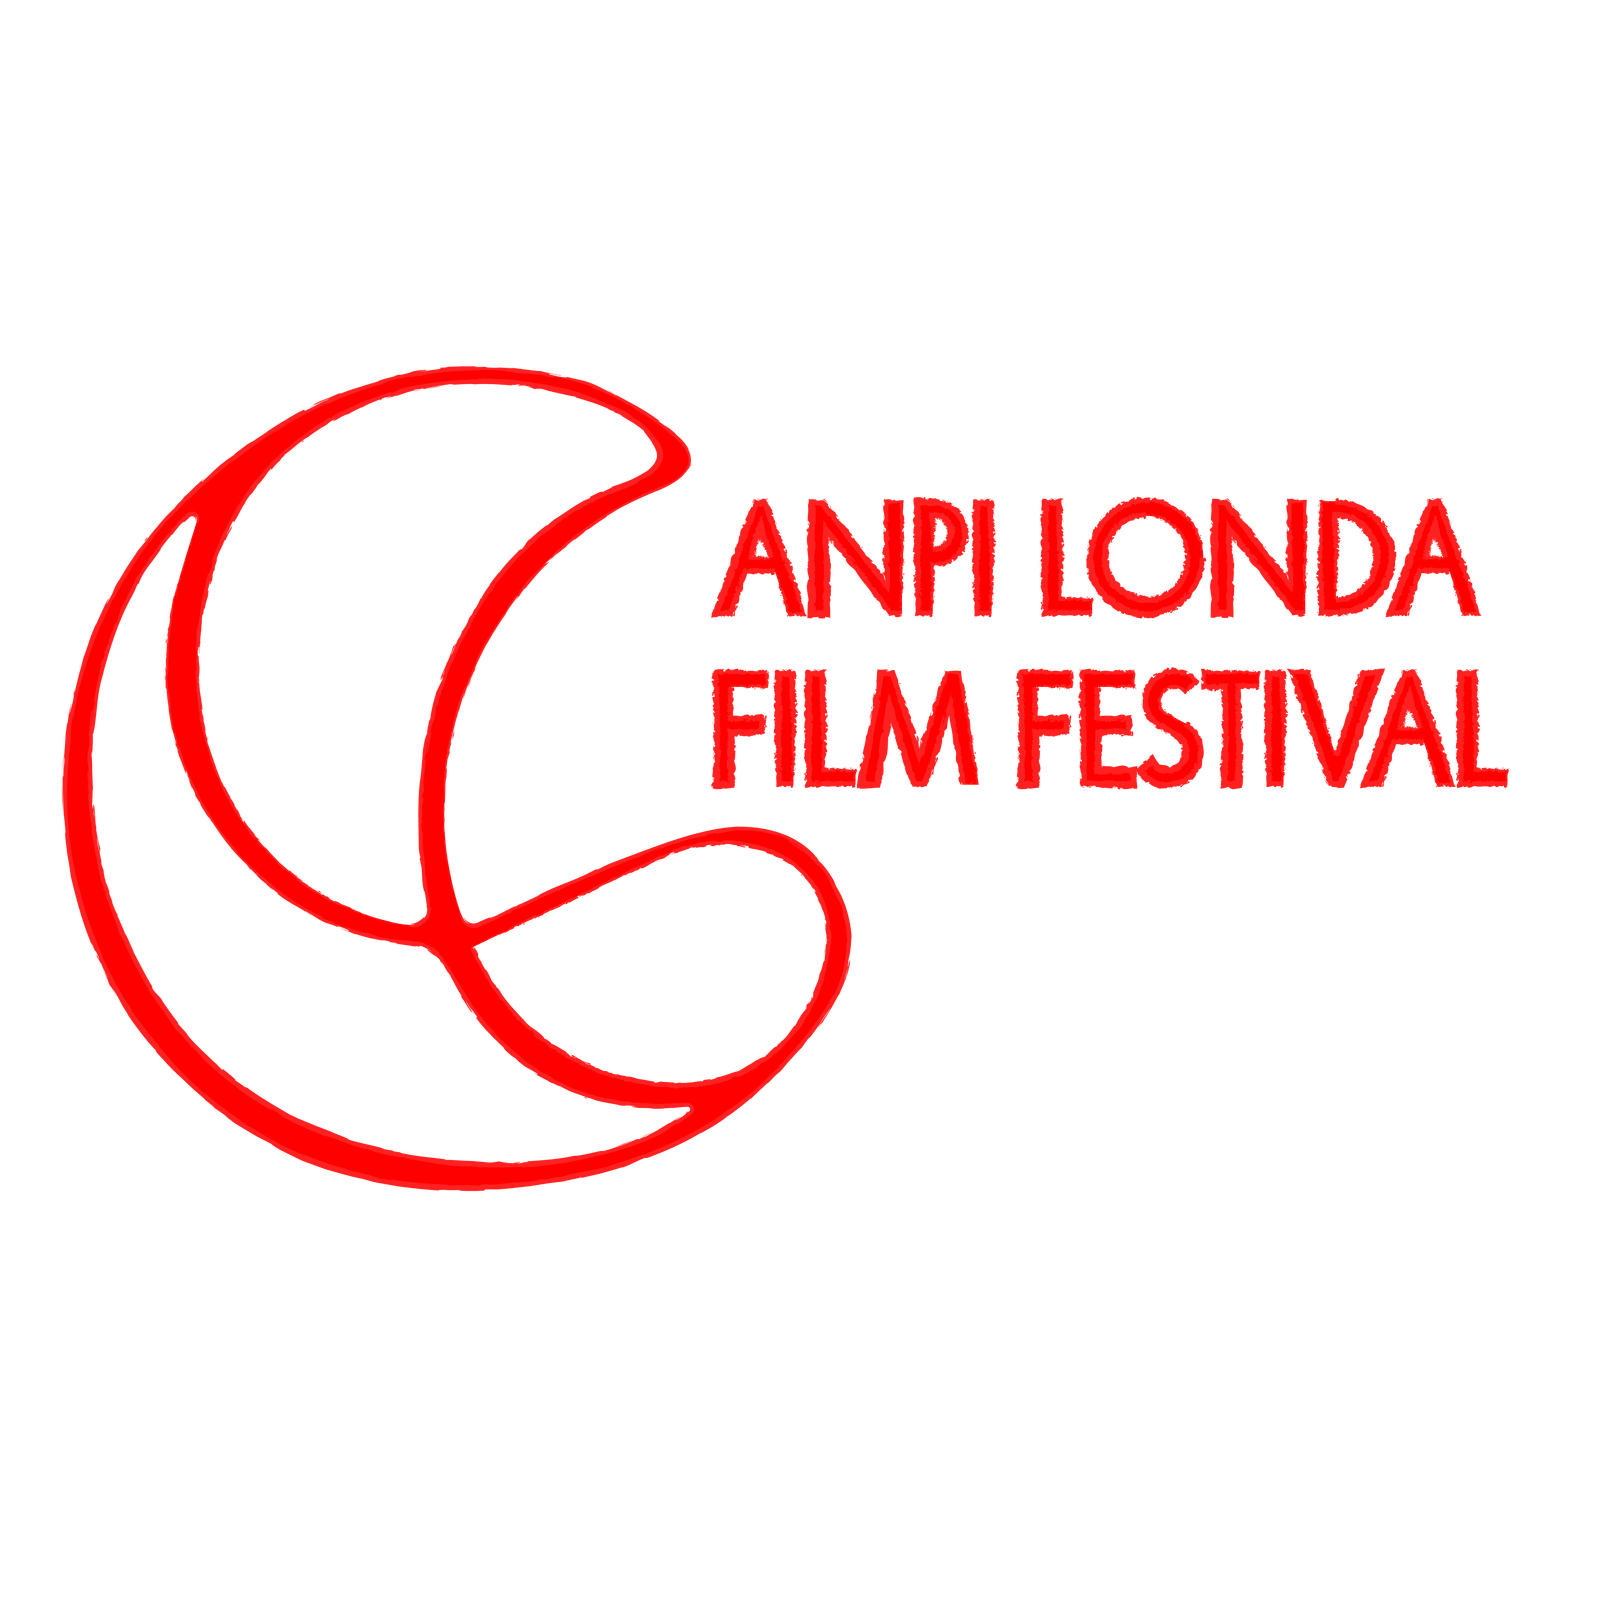 ANPI Londa Film Festival - ANPI Londa Film Festival